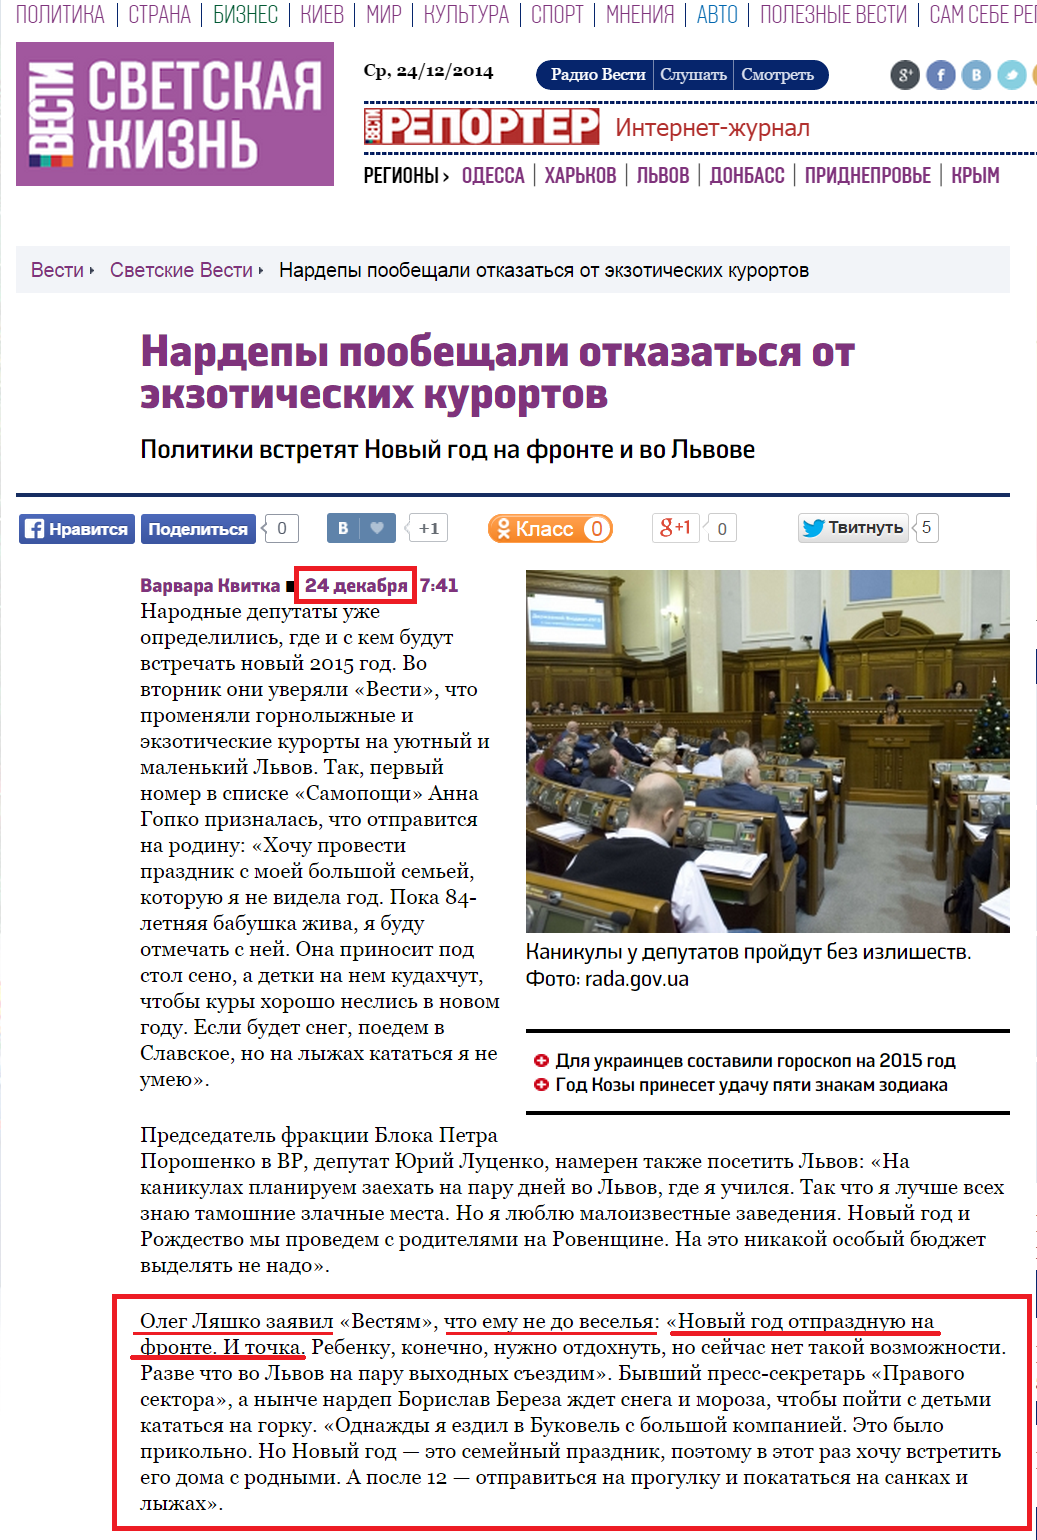 http://vesti-ukr.com/svetskie-vesti/82856-nardepy-poobewali-otkazatsja-ot-jekzoticheskih-kurortov